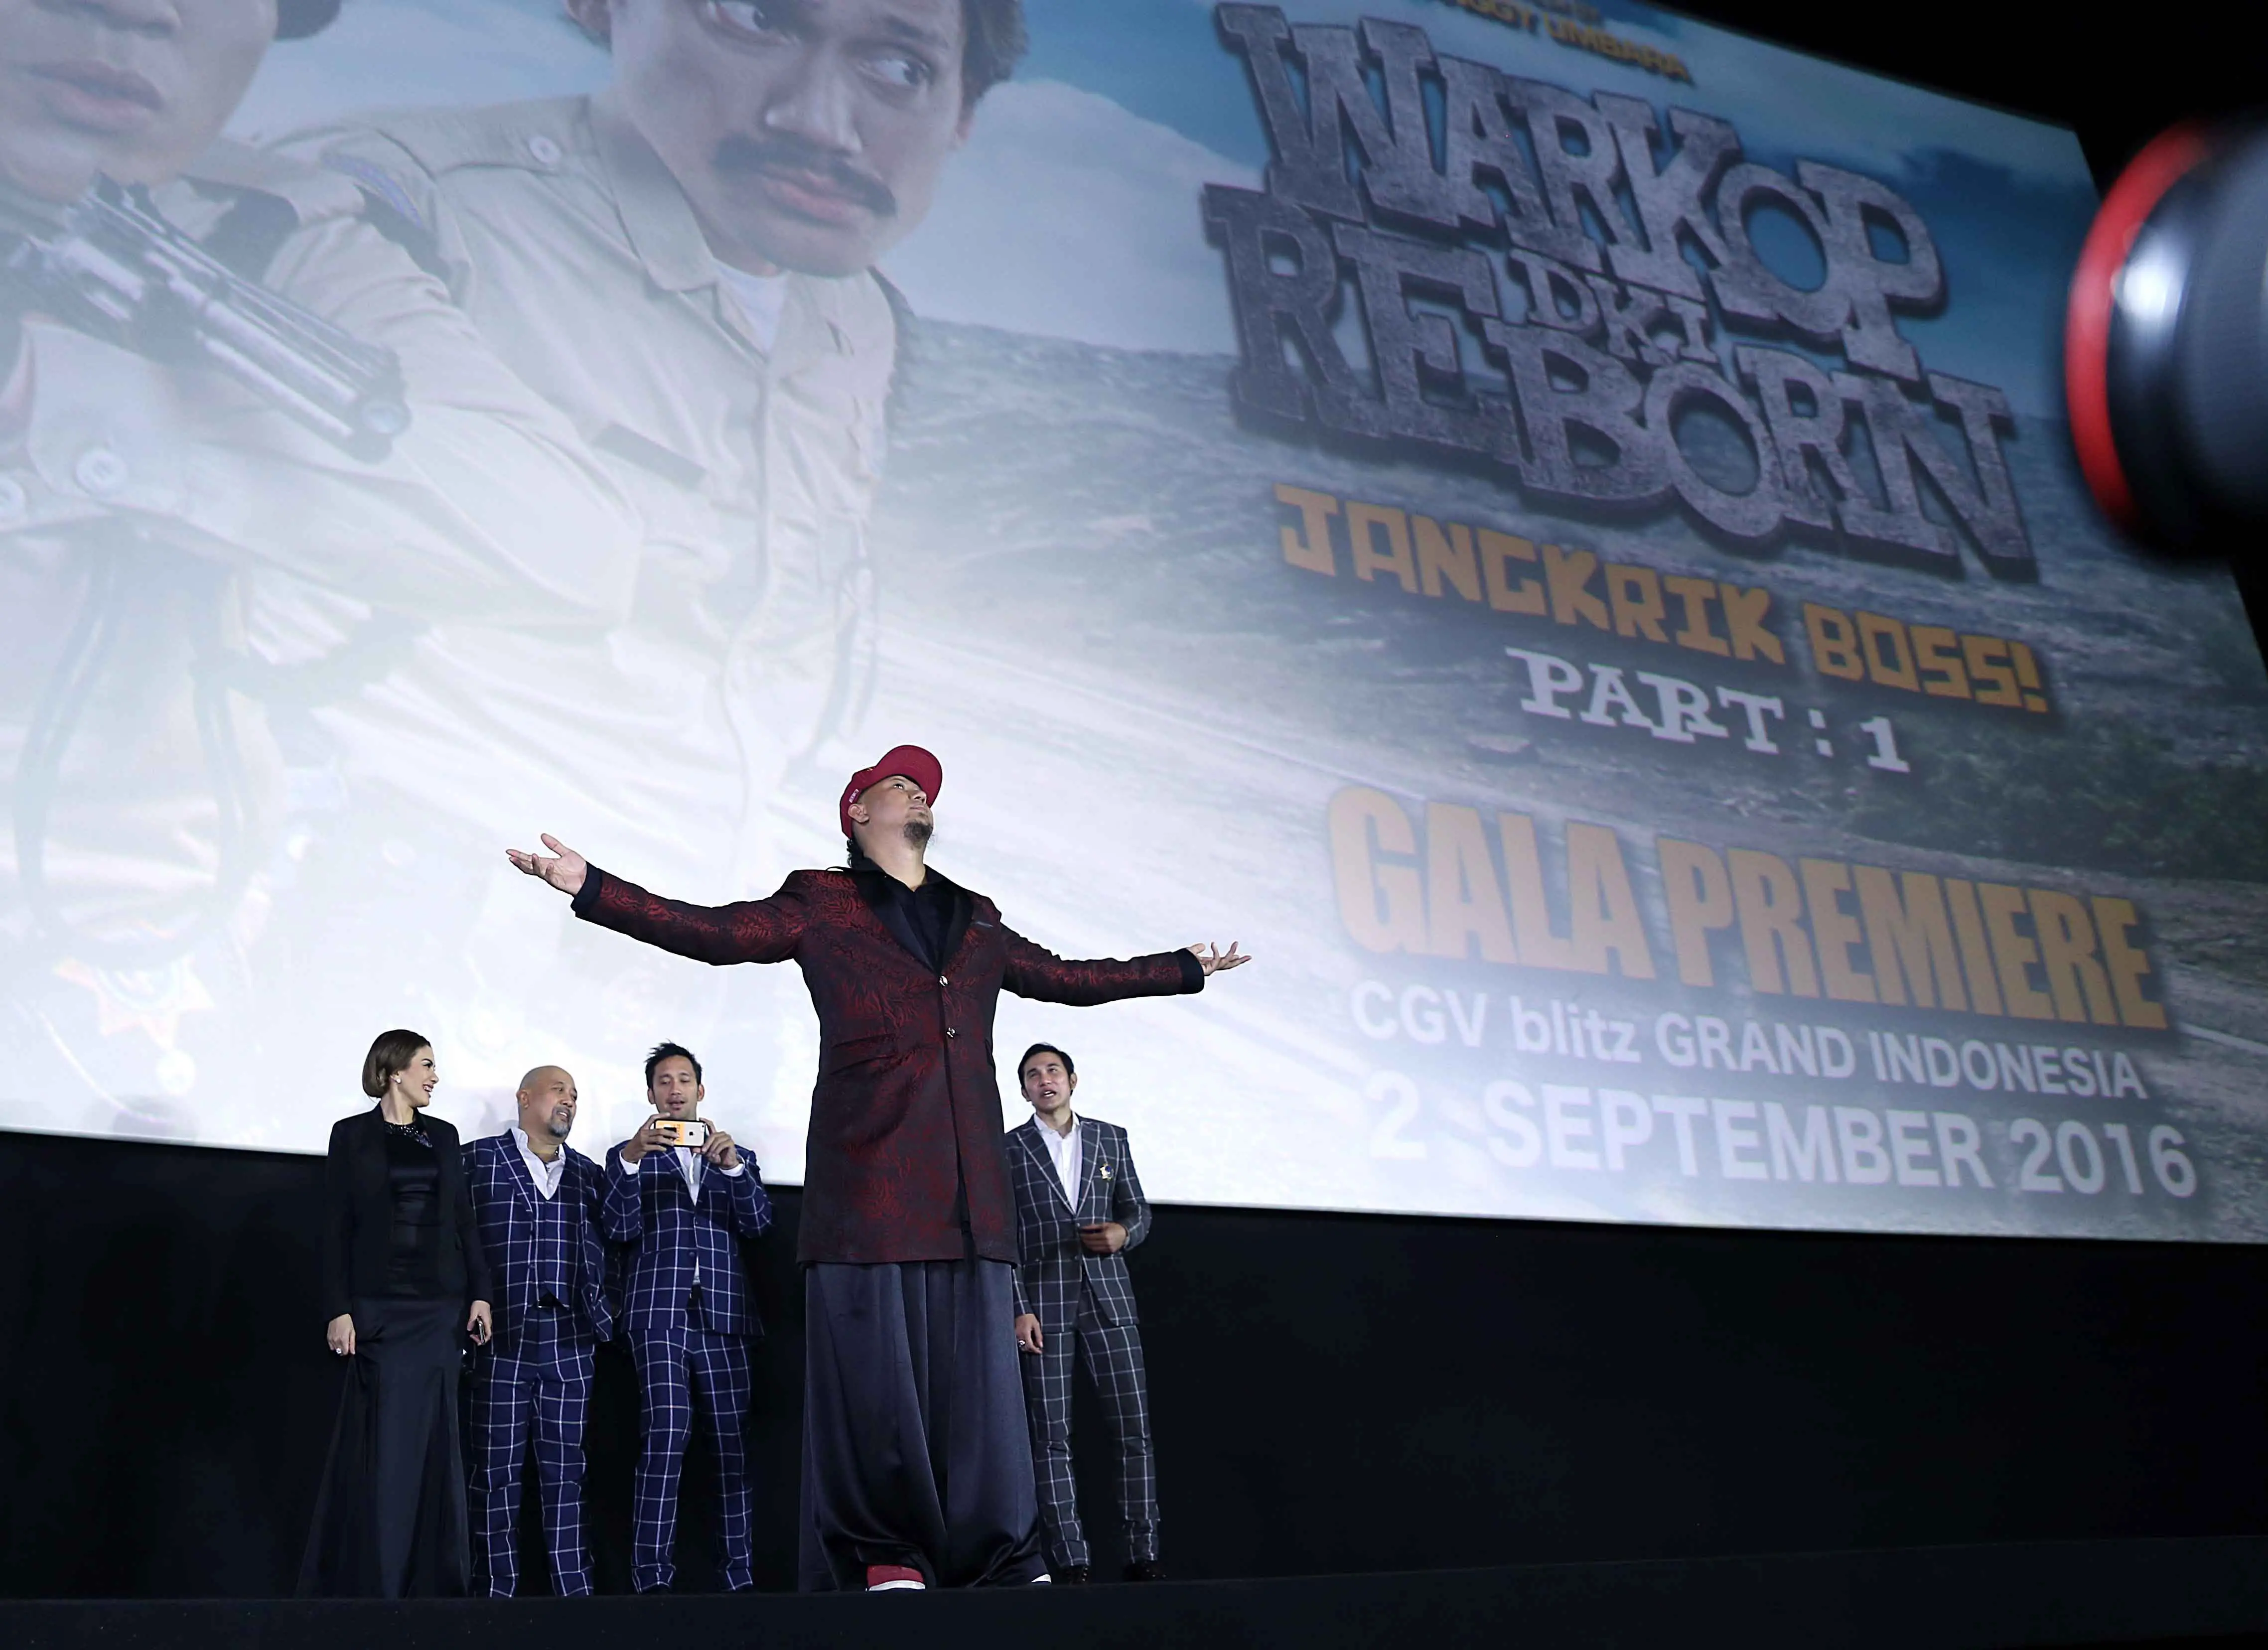 Anggy Umbara menghadiri gala premier film Warkop DKI Reborn. (Nurwahyunan/Bintang.com)